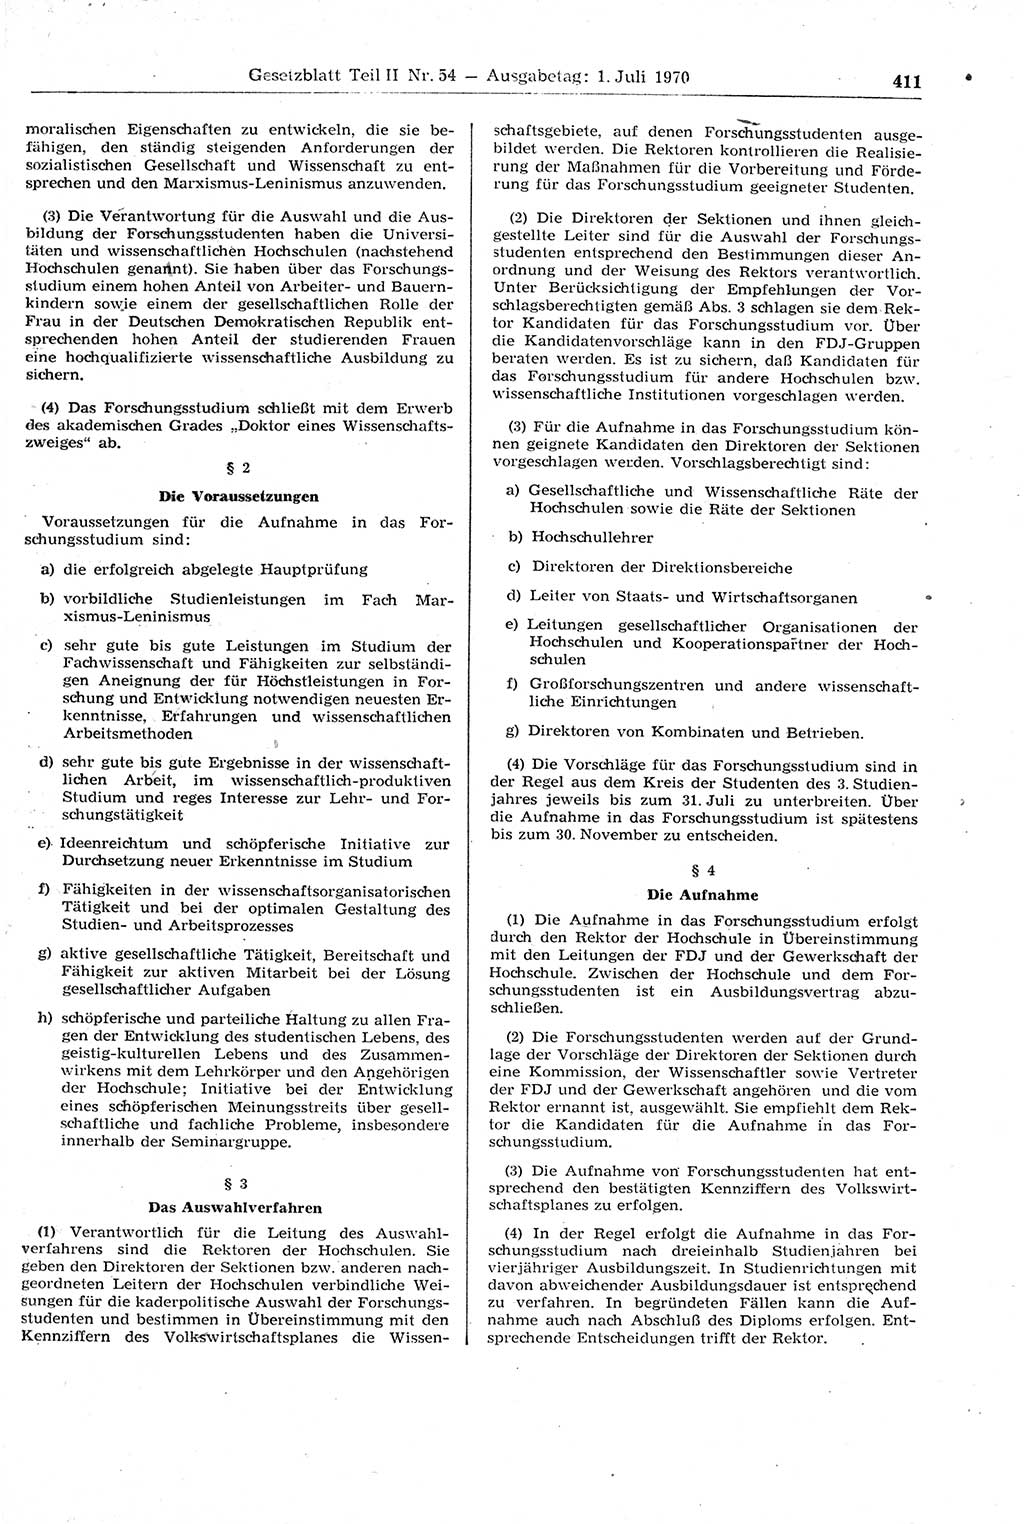 Gesetzblatt (GBl.) der Deutschen Demokratischen Republik (DDR) Teil ⅠⅠ 1970, Seite 411 (GBl. DDR ⅠⅠ 1970, S. 411)